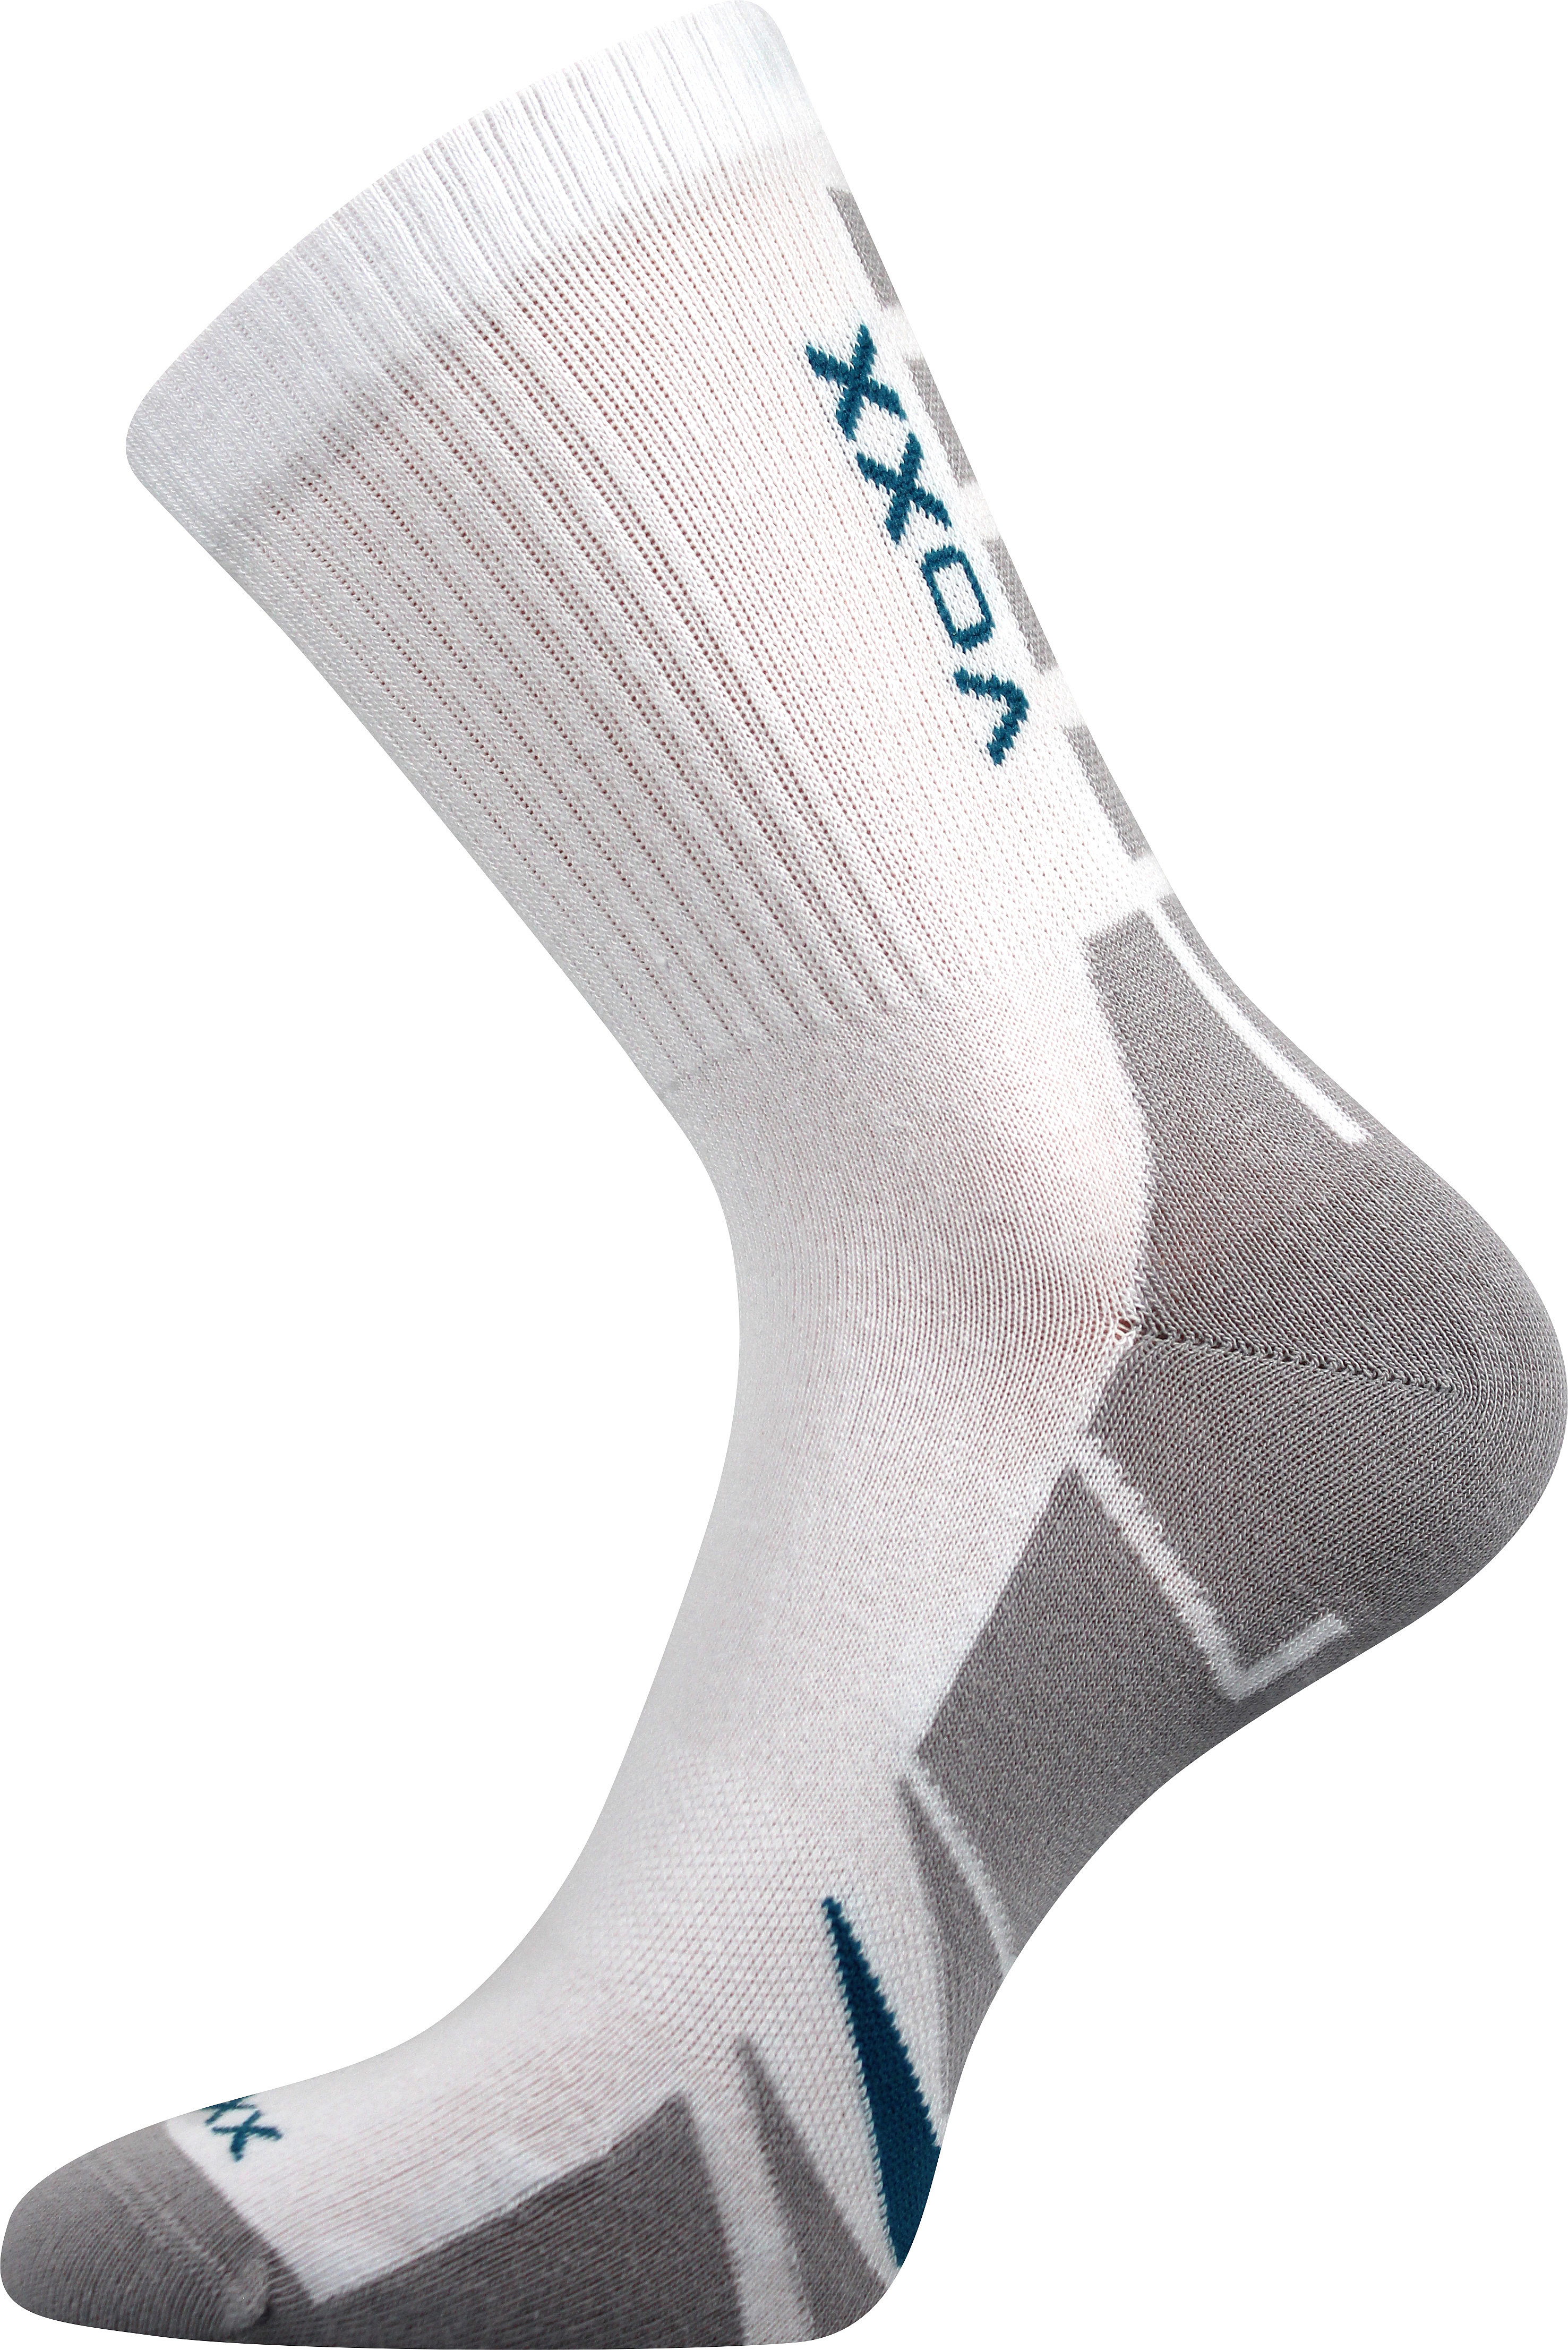 Ponožky sportovní Voxx Hermes - bílé-šedé, 35-38